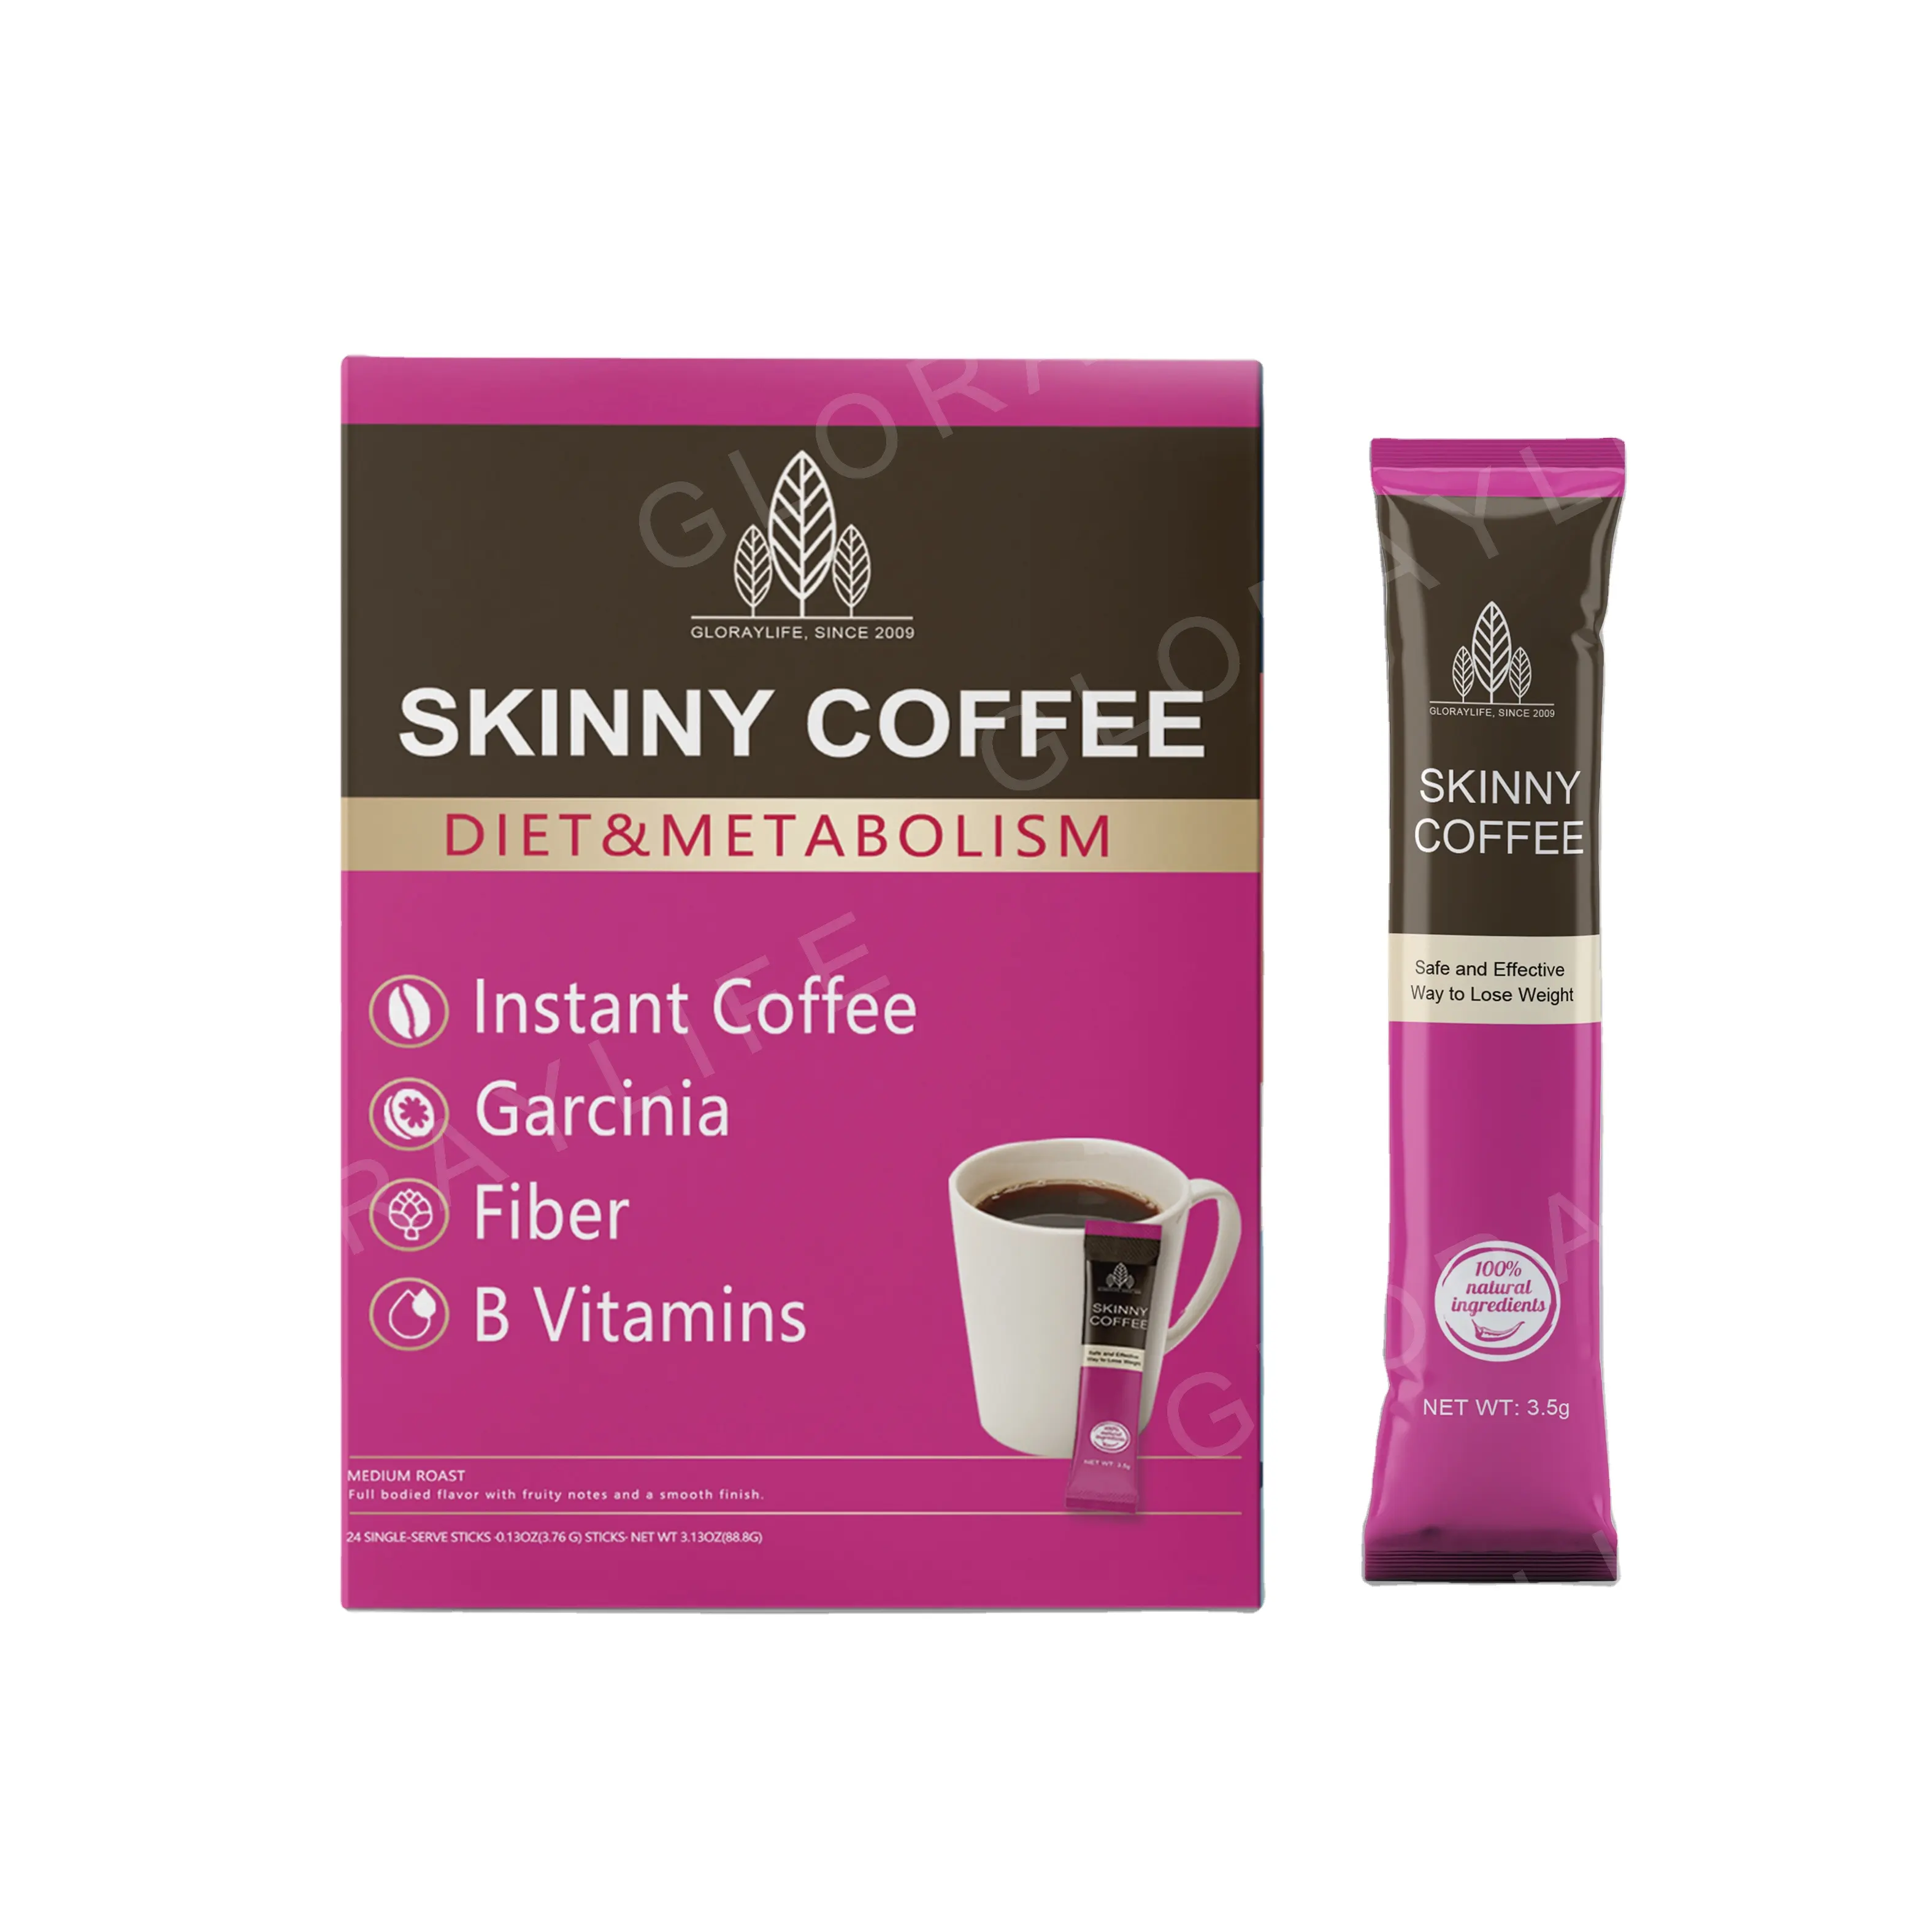 सुपर स्किनी कॉफी पाउडर सेफट्स लस मुक्त ऊर्जा वजन घटाने के लिए उच्च गुणवत्ता वाली कॉफी बीन्स को बढ़ावा देती है